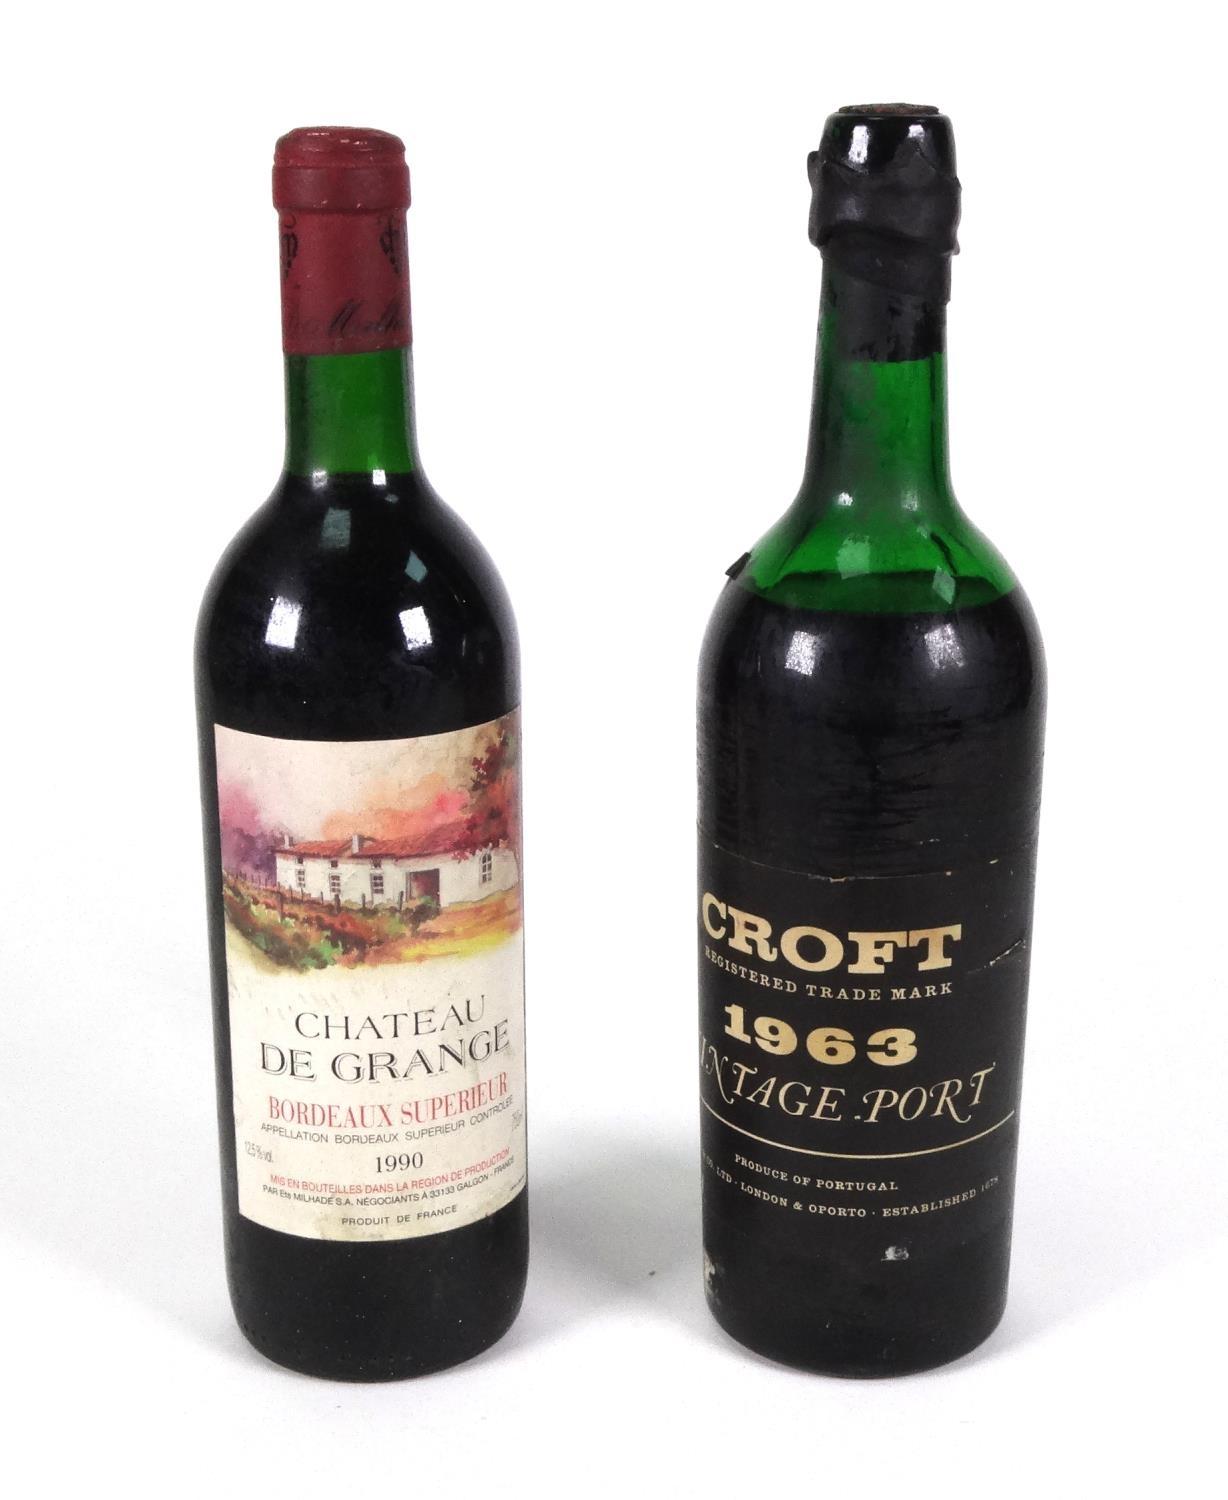 Bottle of 1990 Chateau de Grange red wine, together with a bottle of Croft 1963 vintage port